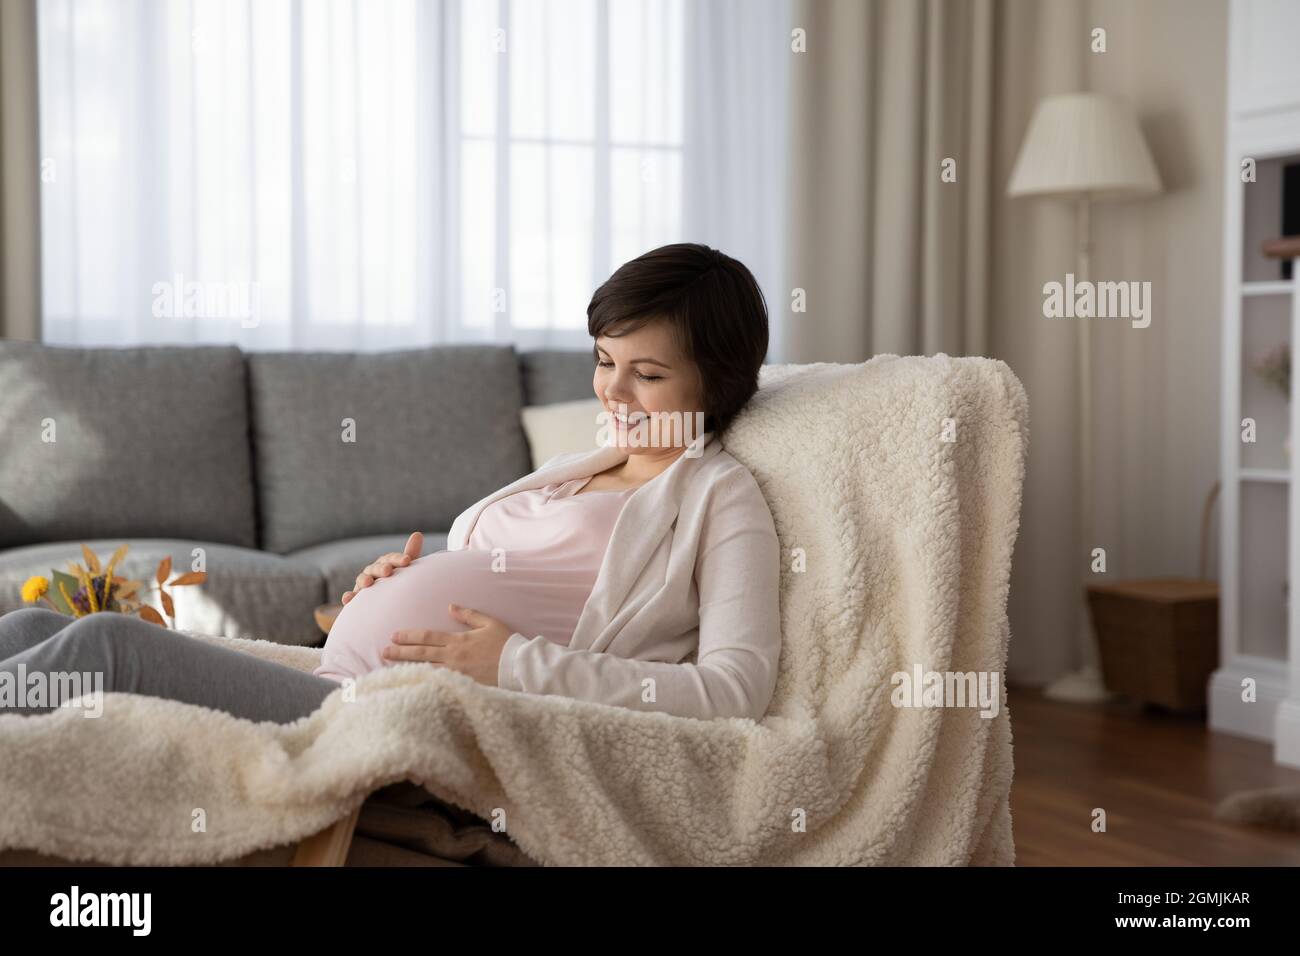 Bambino in poltrona immagini e fotografie stock ad alta risoluzione - Alamy